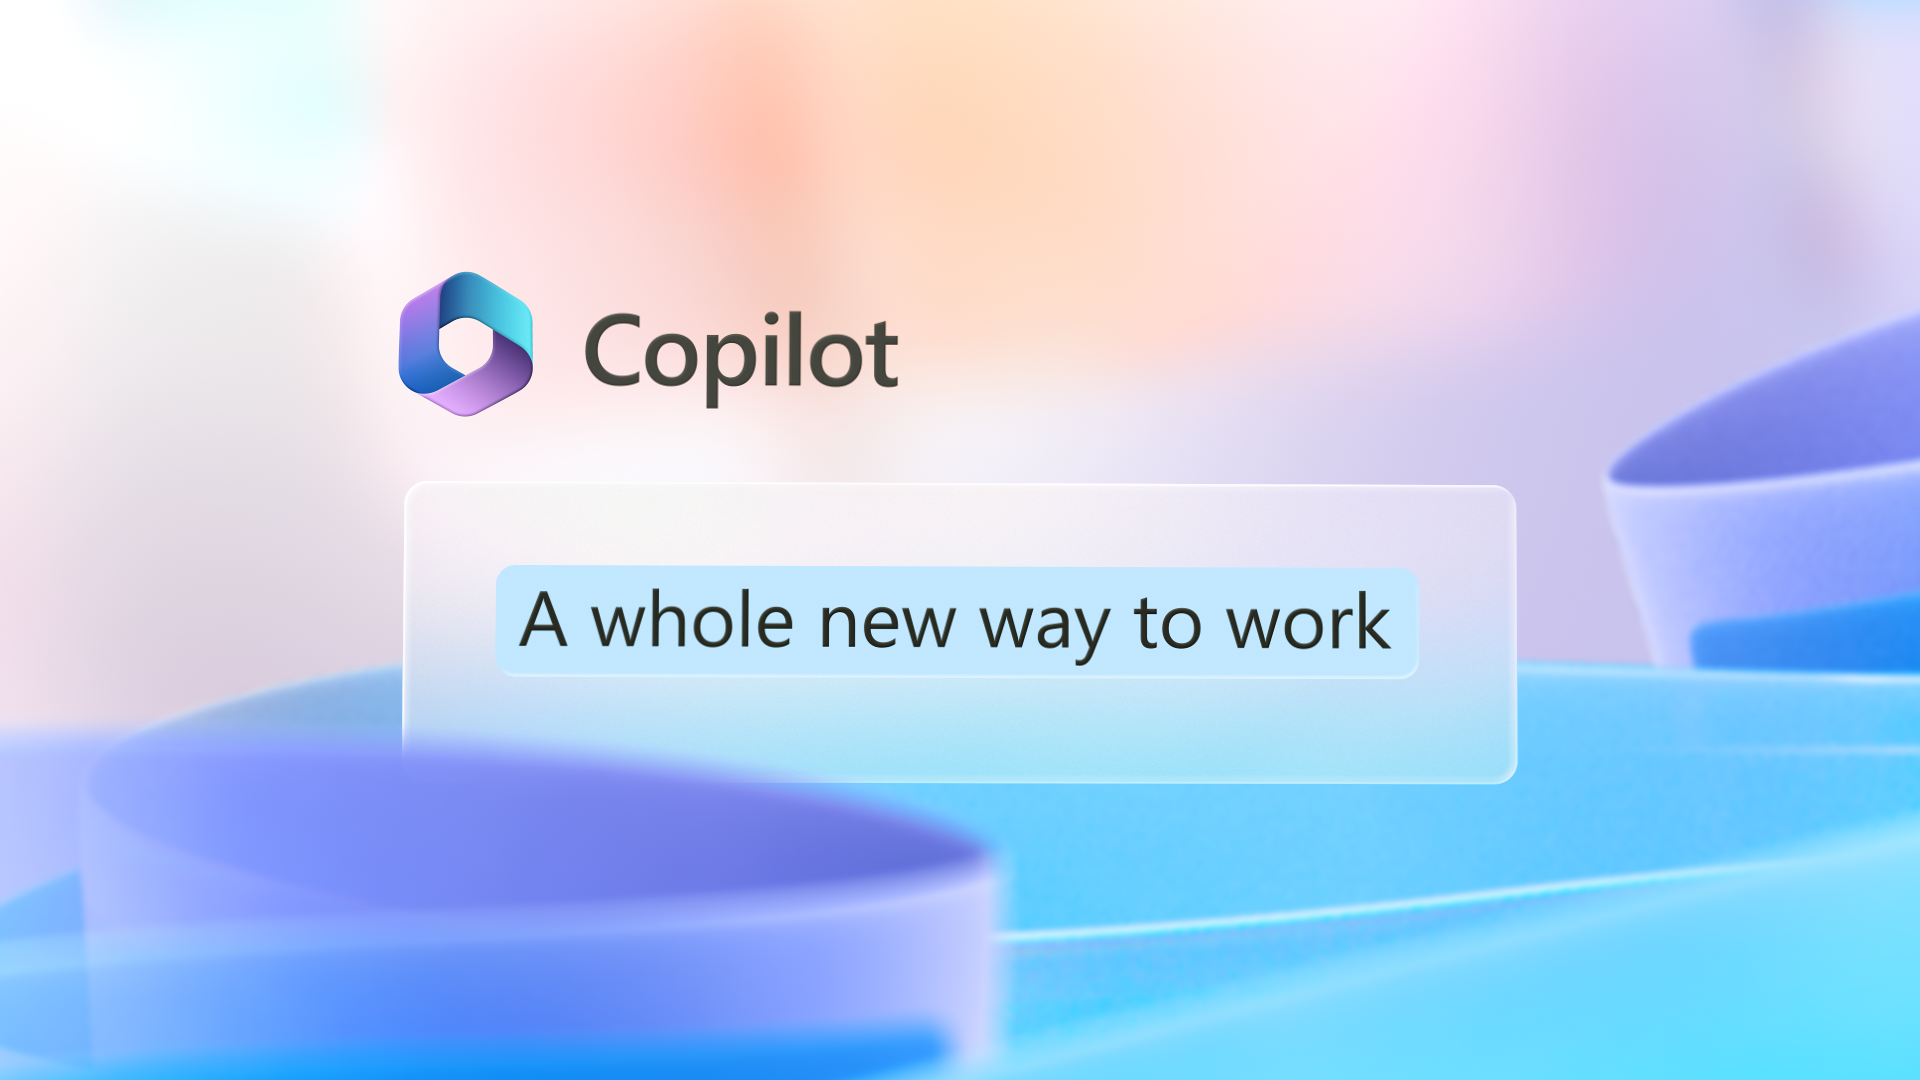 Grafik görüntüde Copilot logosu bulunur ve bu logonun çalışma için yepyeni bir yolu vardır.